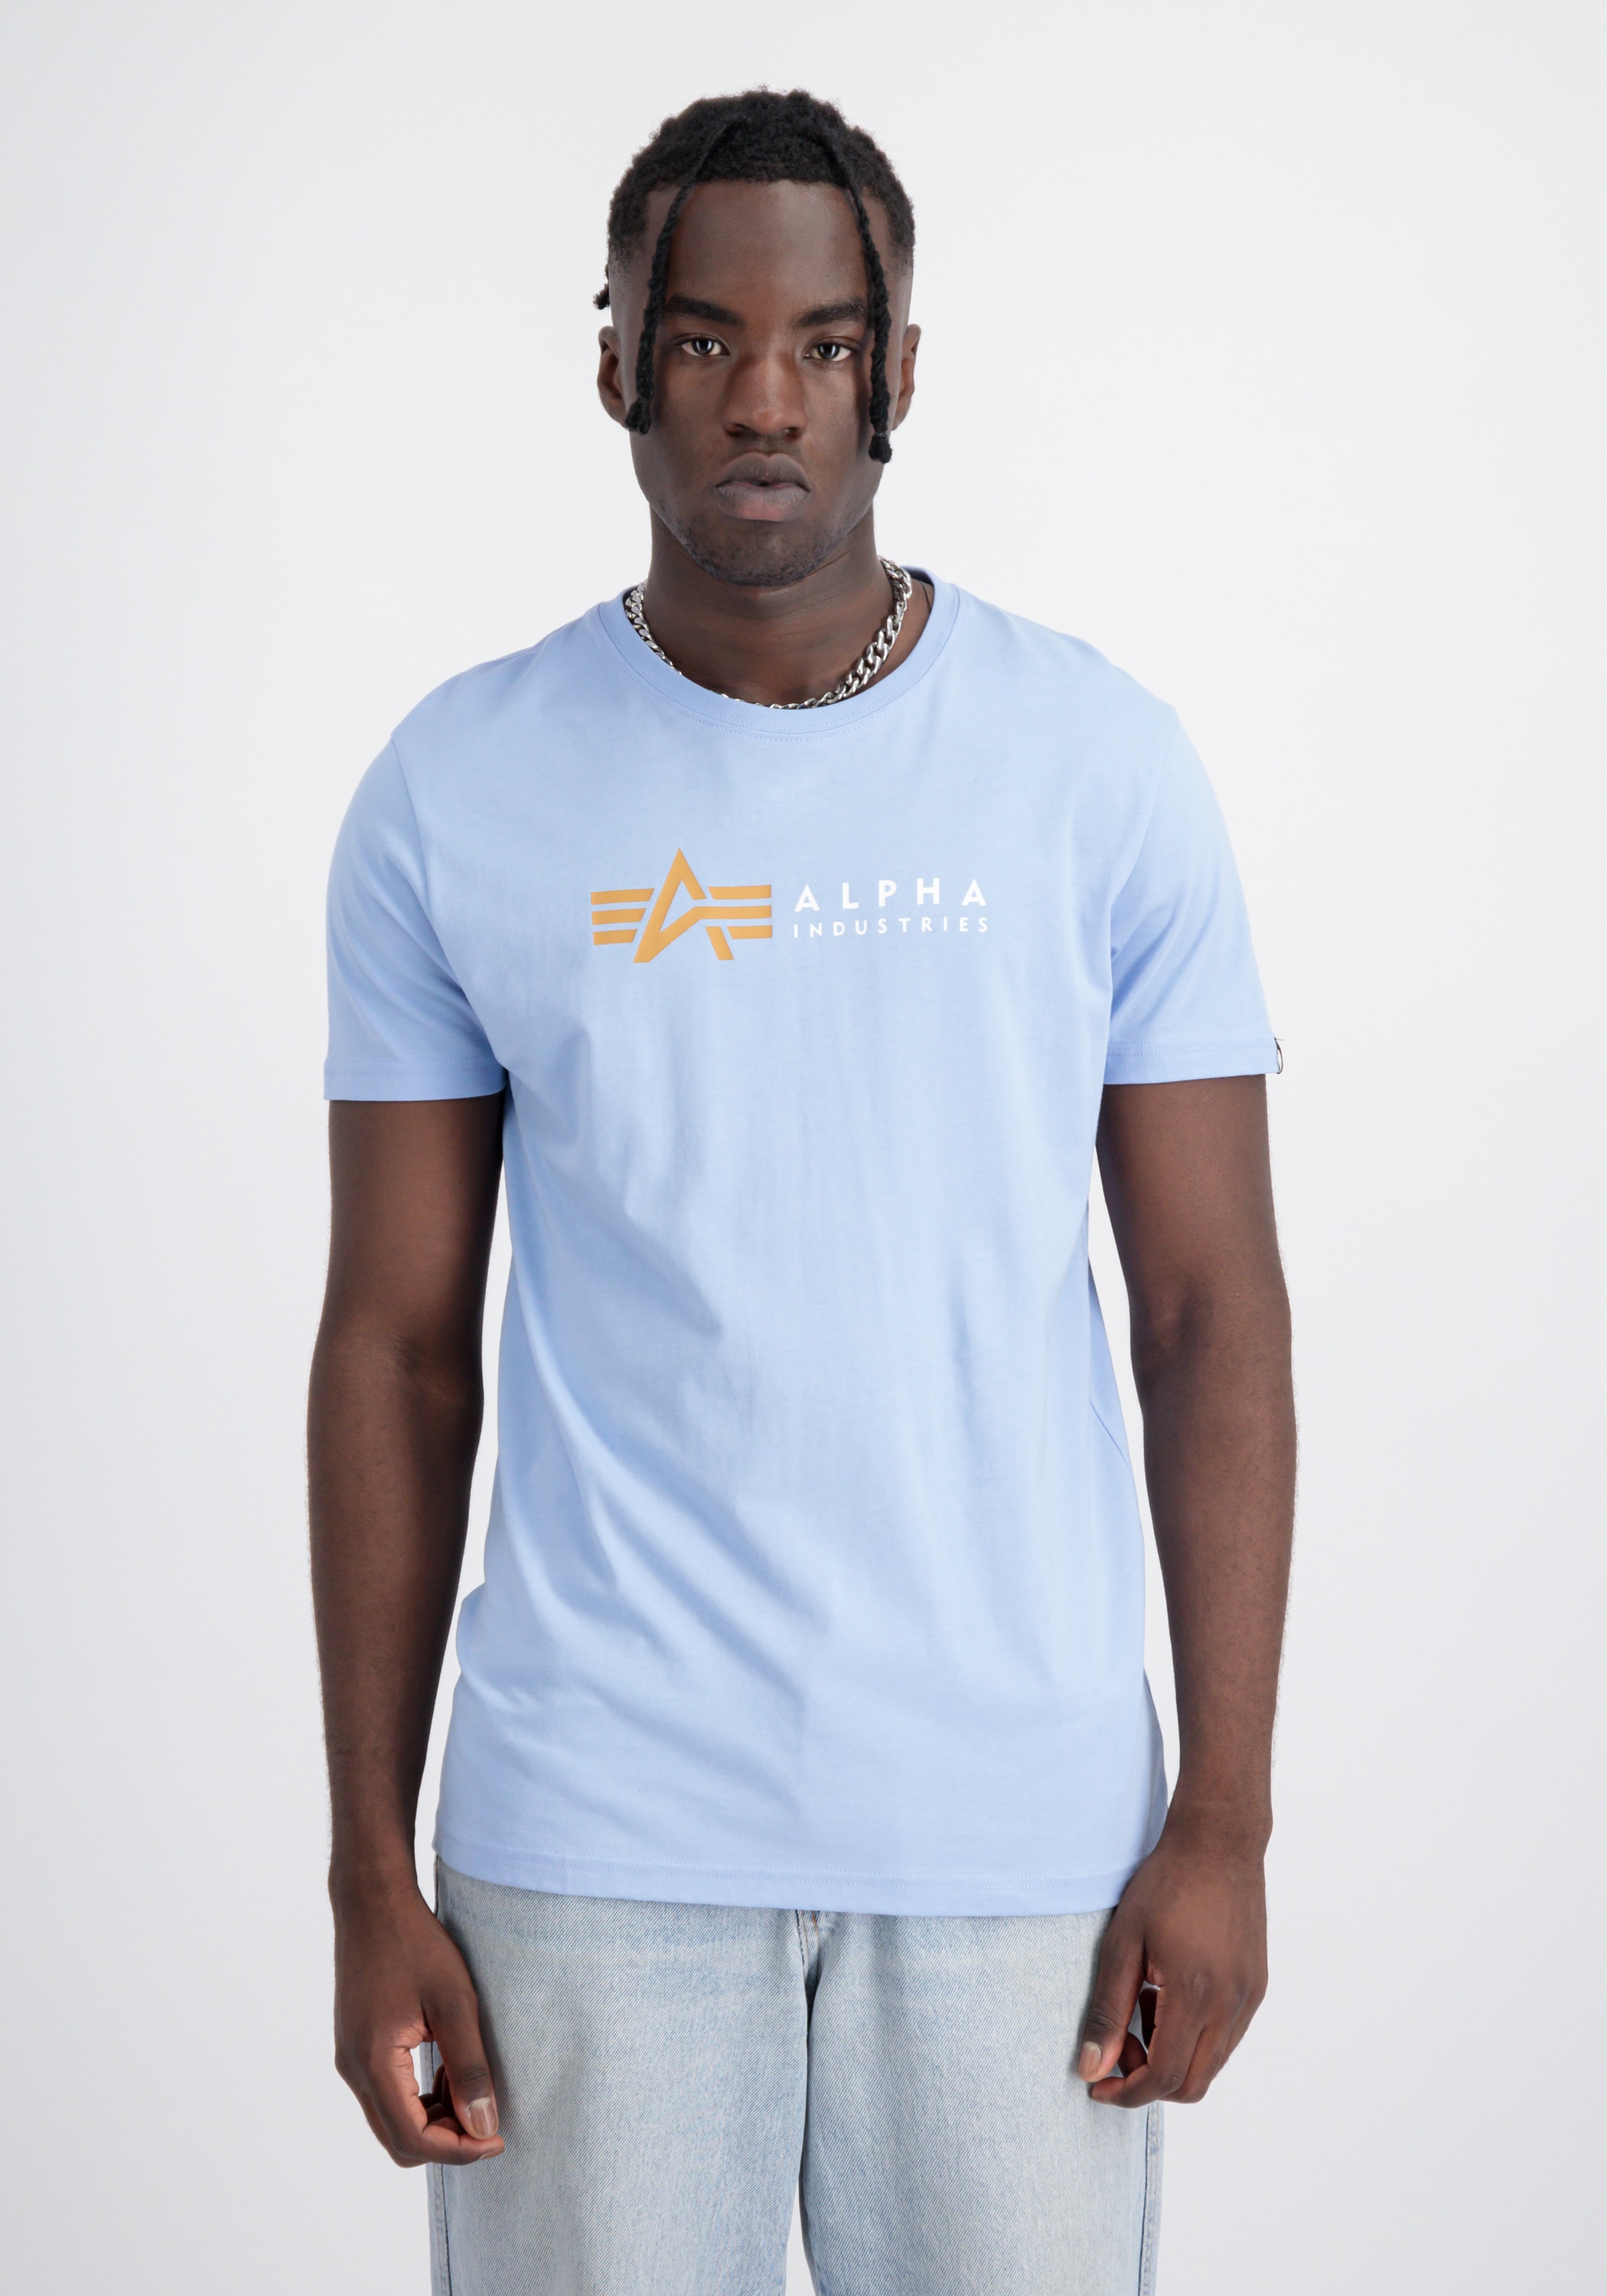 T« Industries bestellen Alpha T-Shirt »Alpha Industries T-Shirts Label Alpha - Men